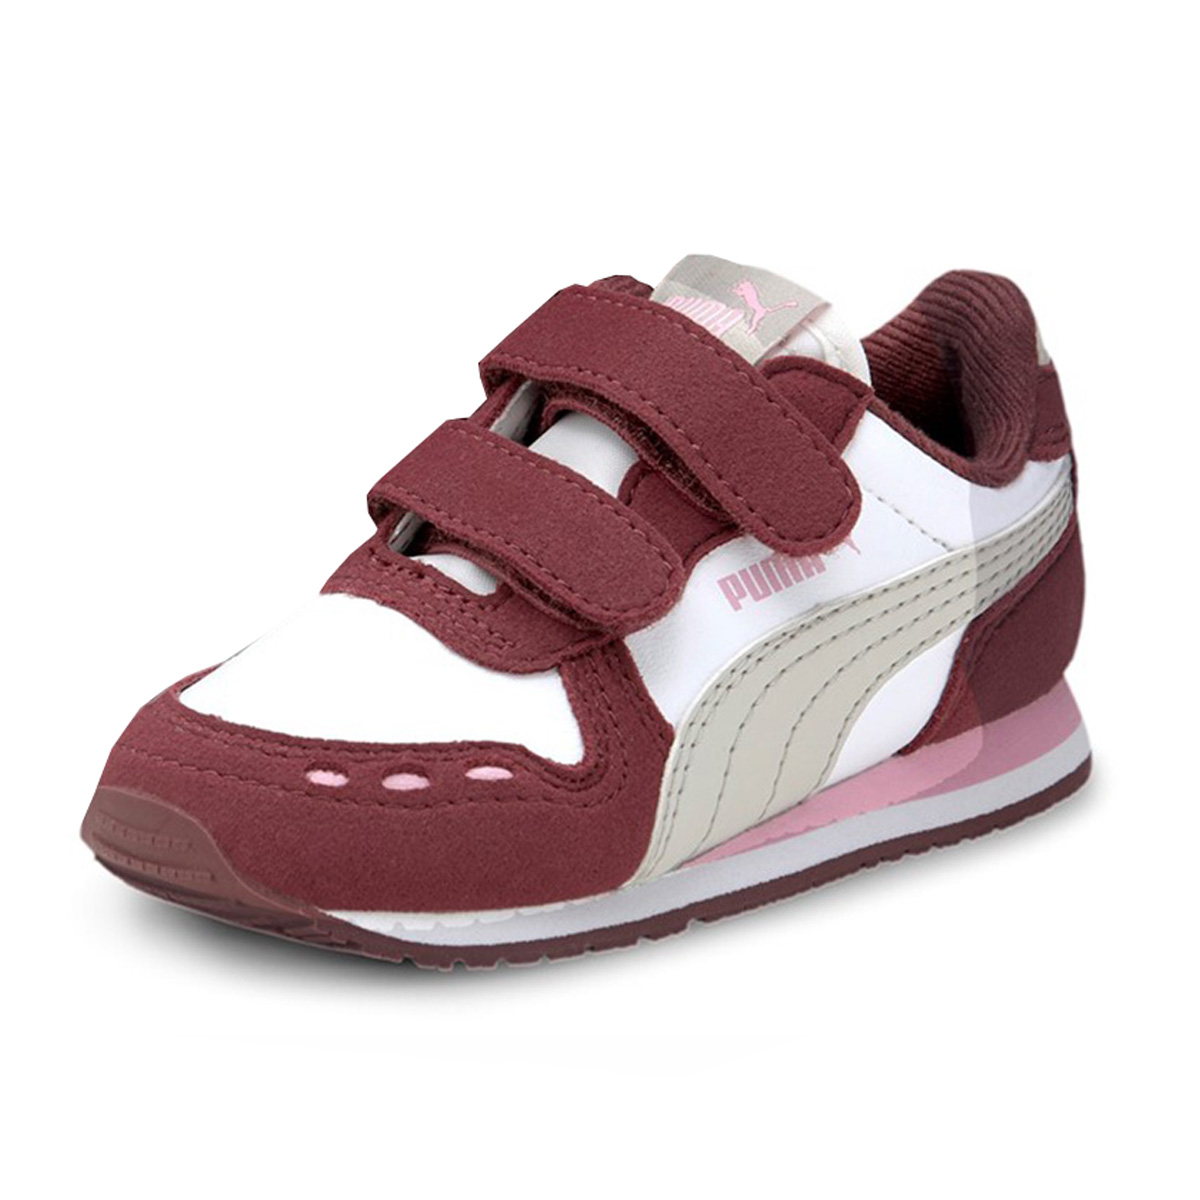 PUMA Cabana Racer SL V Inf Kinder Sneaker Klettverschluss Weiss/ Violett 351980